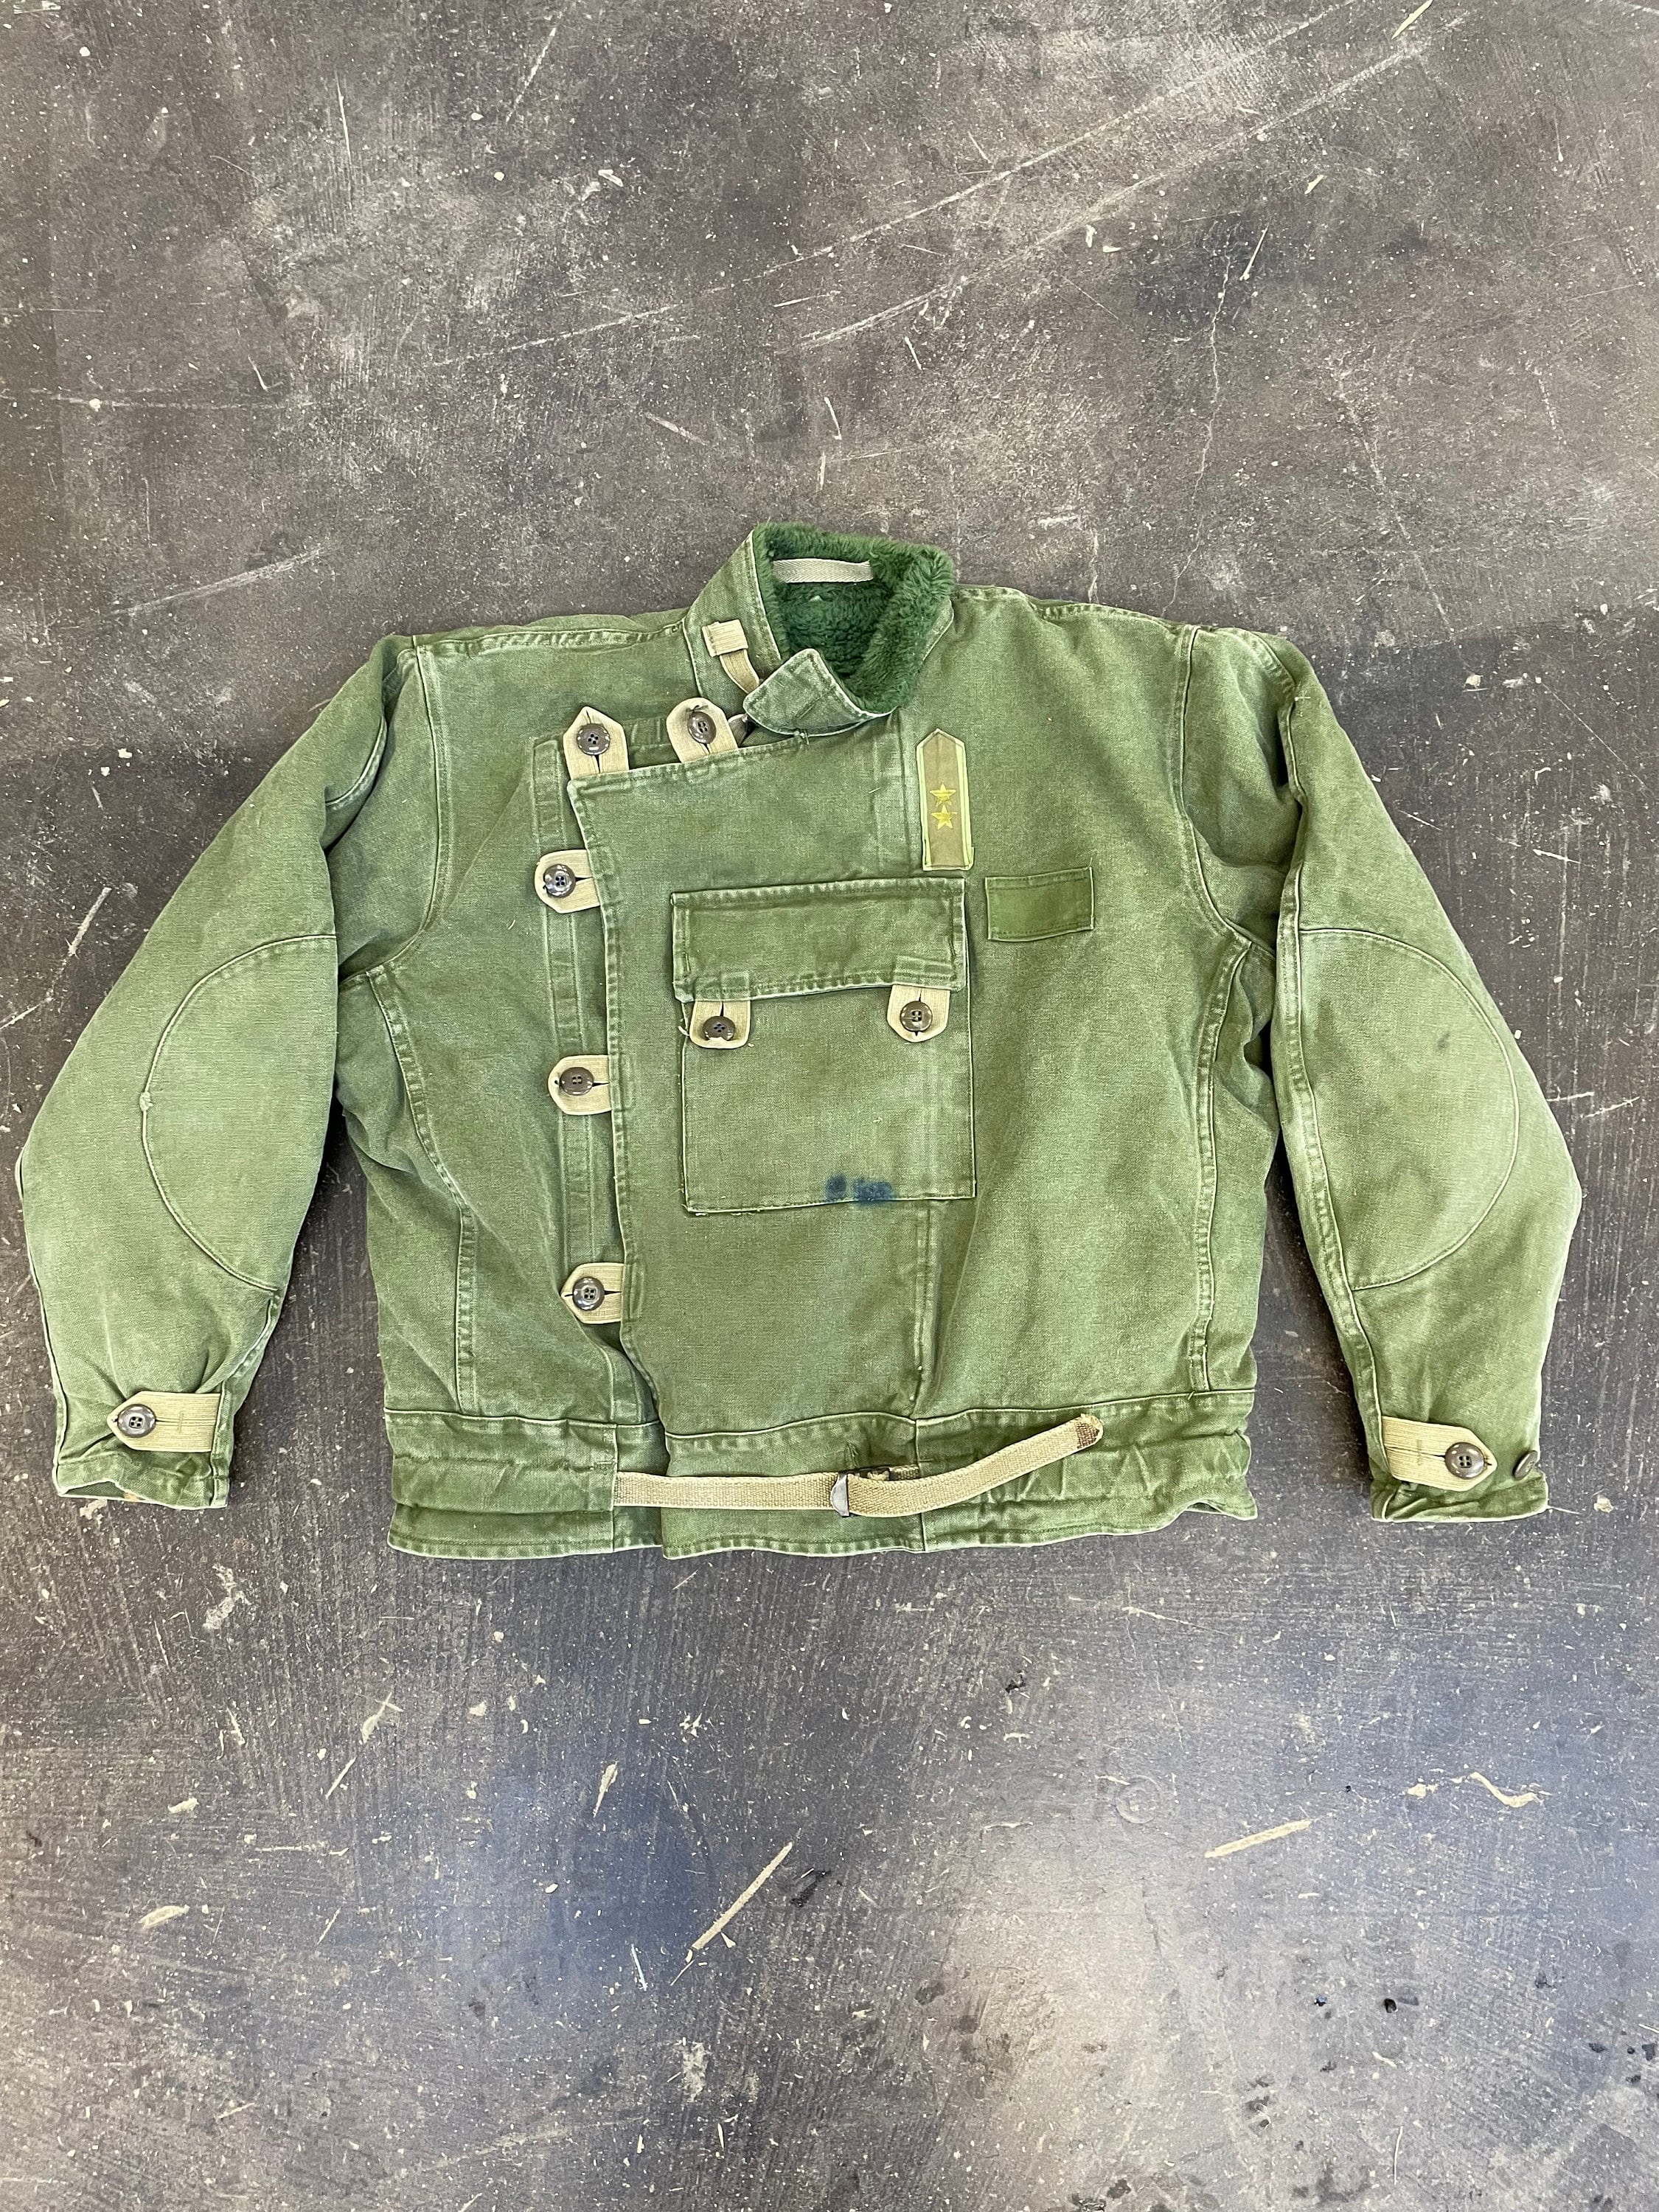 Vintage Military Coat Jacket Liner C152 Soft Olive Green Vtg RARE